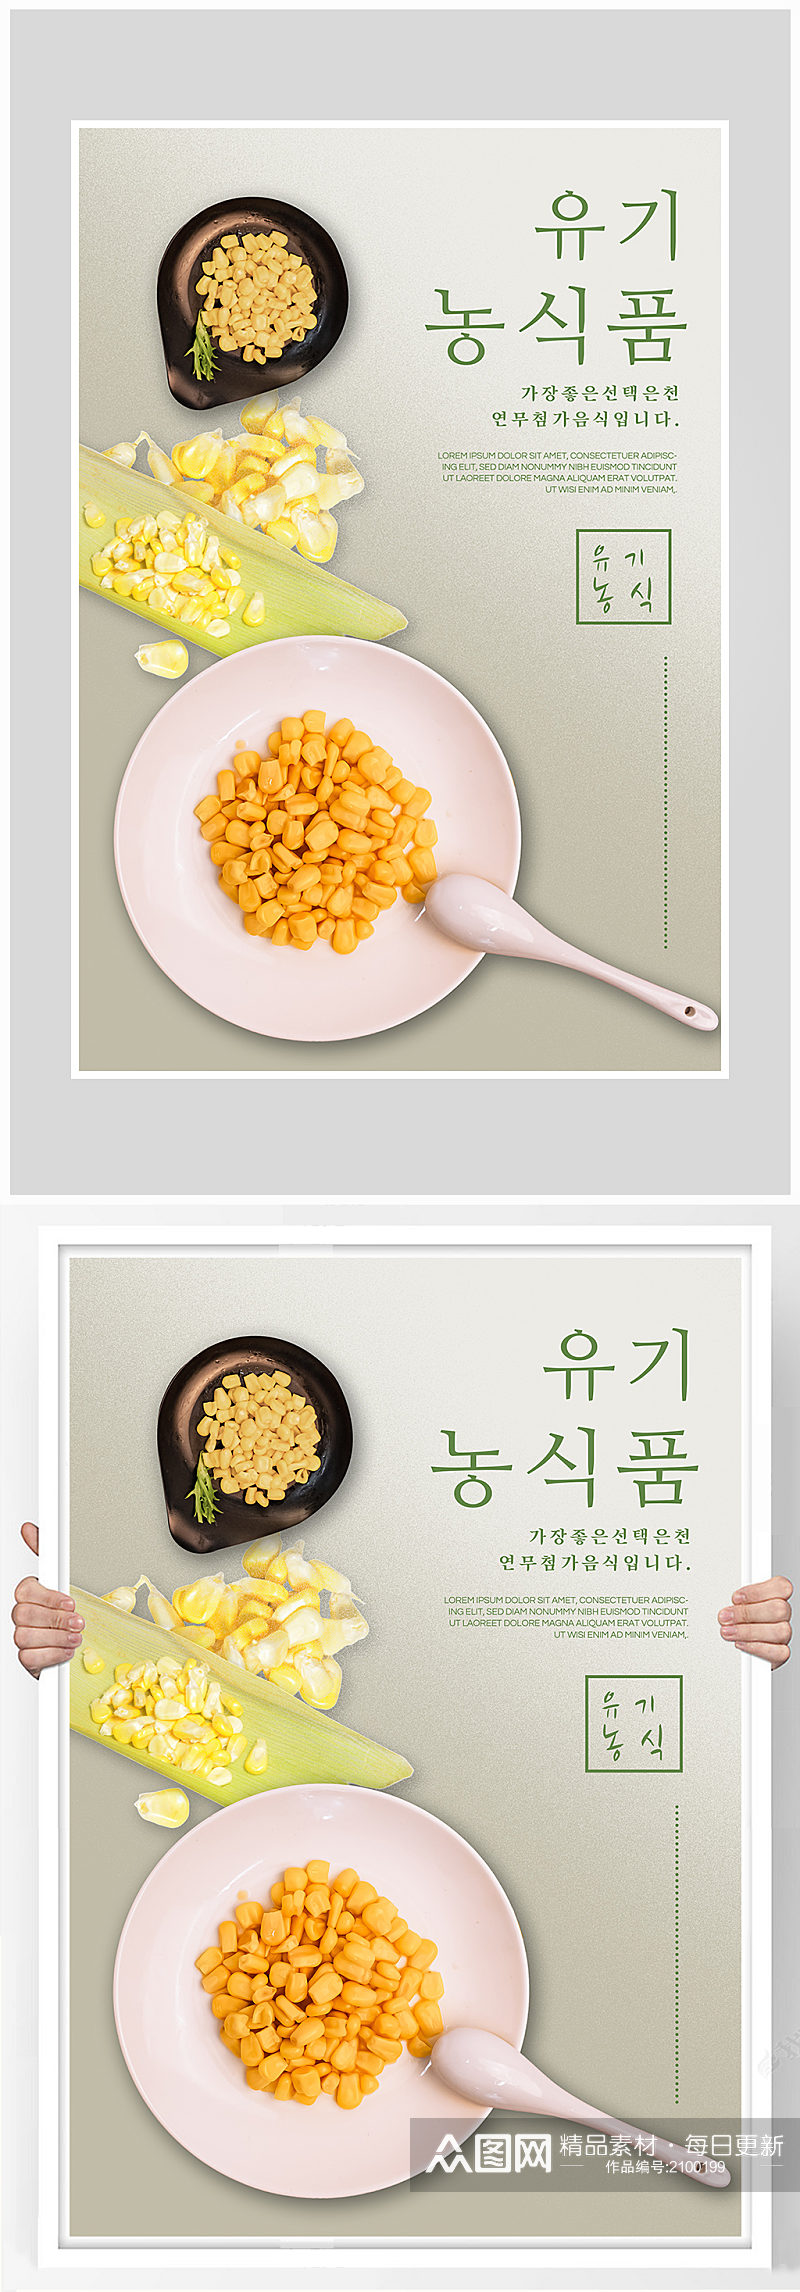 创意玉米有机蔬菜海报设计素材